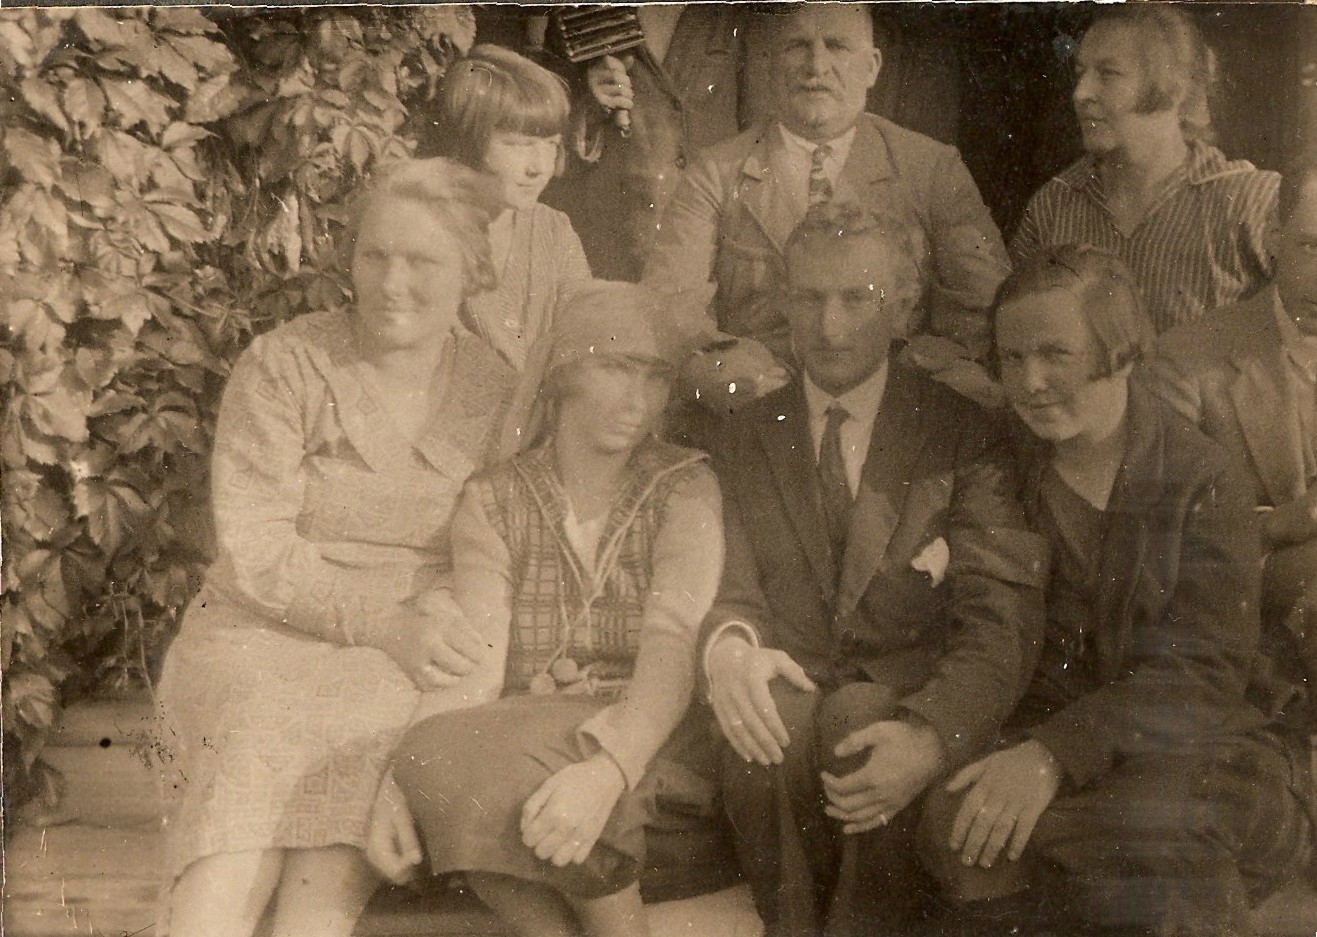 Klemens, Hanna, Kazimierz i ciotki Płońskie w 1927 roku / źródło: archiwum rodzinne Krzysztofa Strzałkowskiego